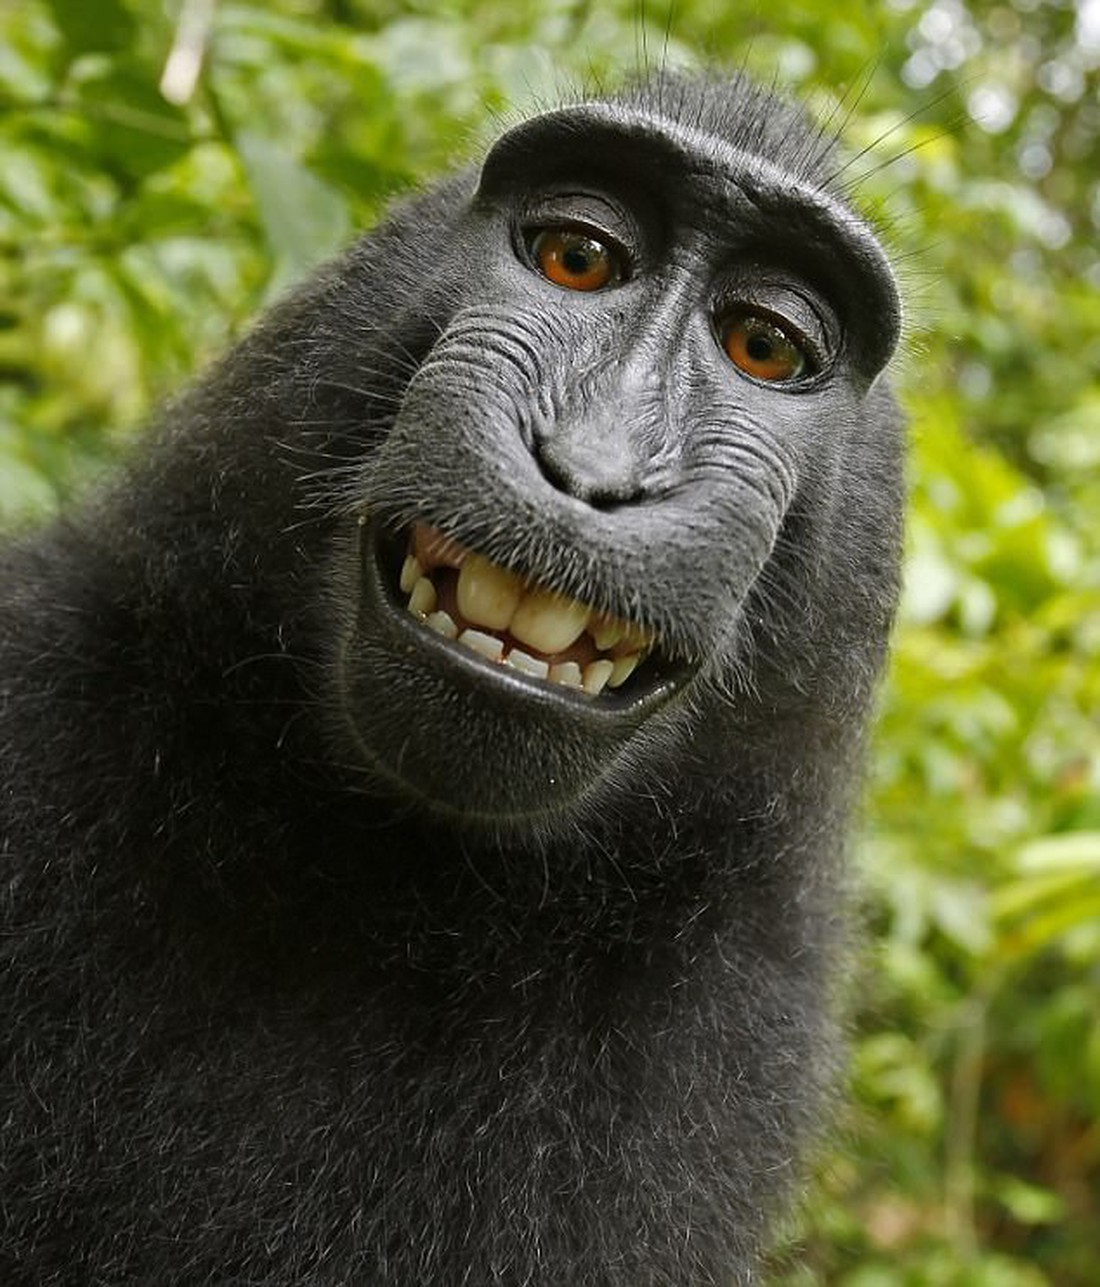 Khỉ hoang dã thành ngôi sao mạng xã hội nhờ nụ cười dễ thương - Ảnh 1.